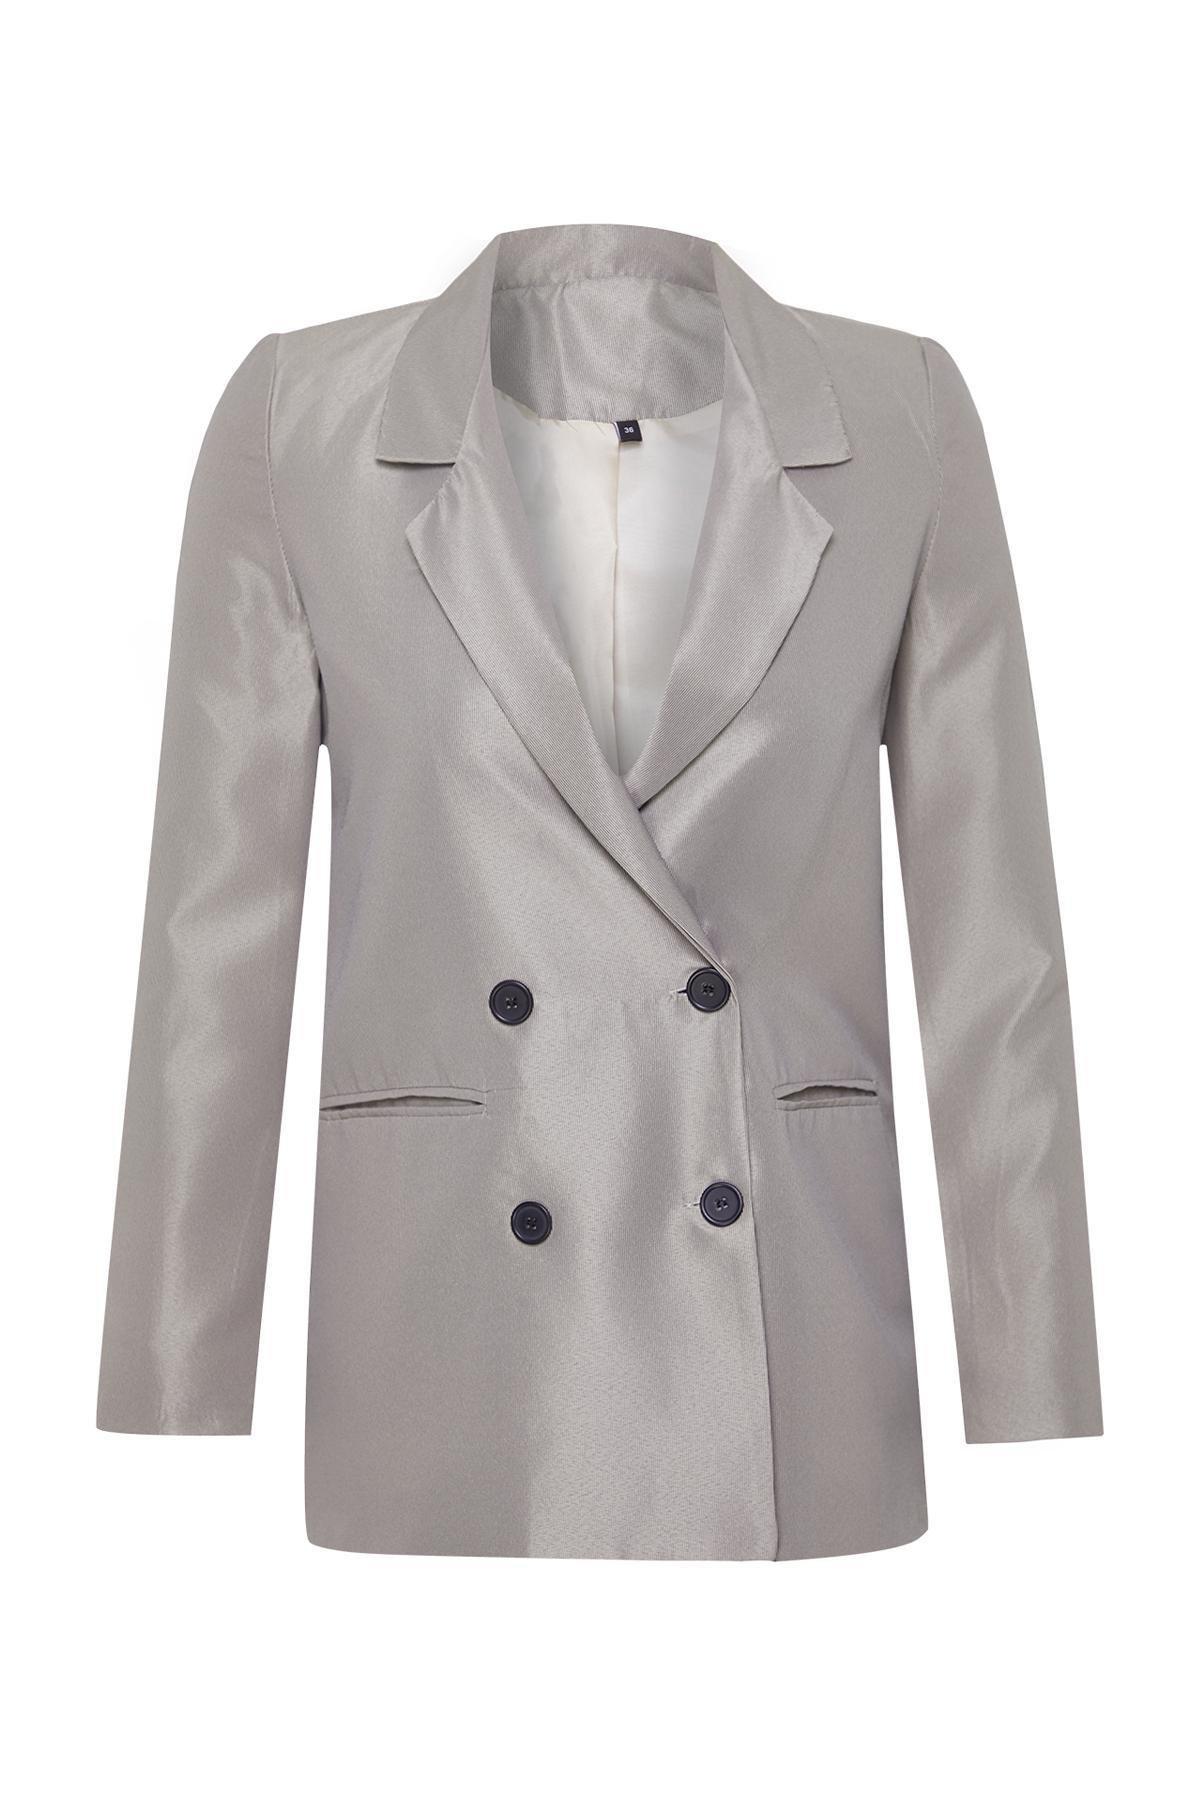 Trendyol - Beige Buttoned Woven Blazer Jacket